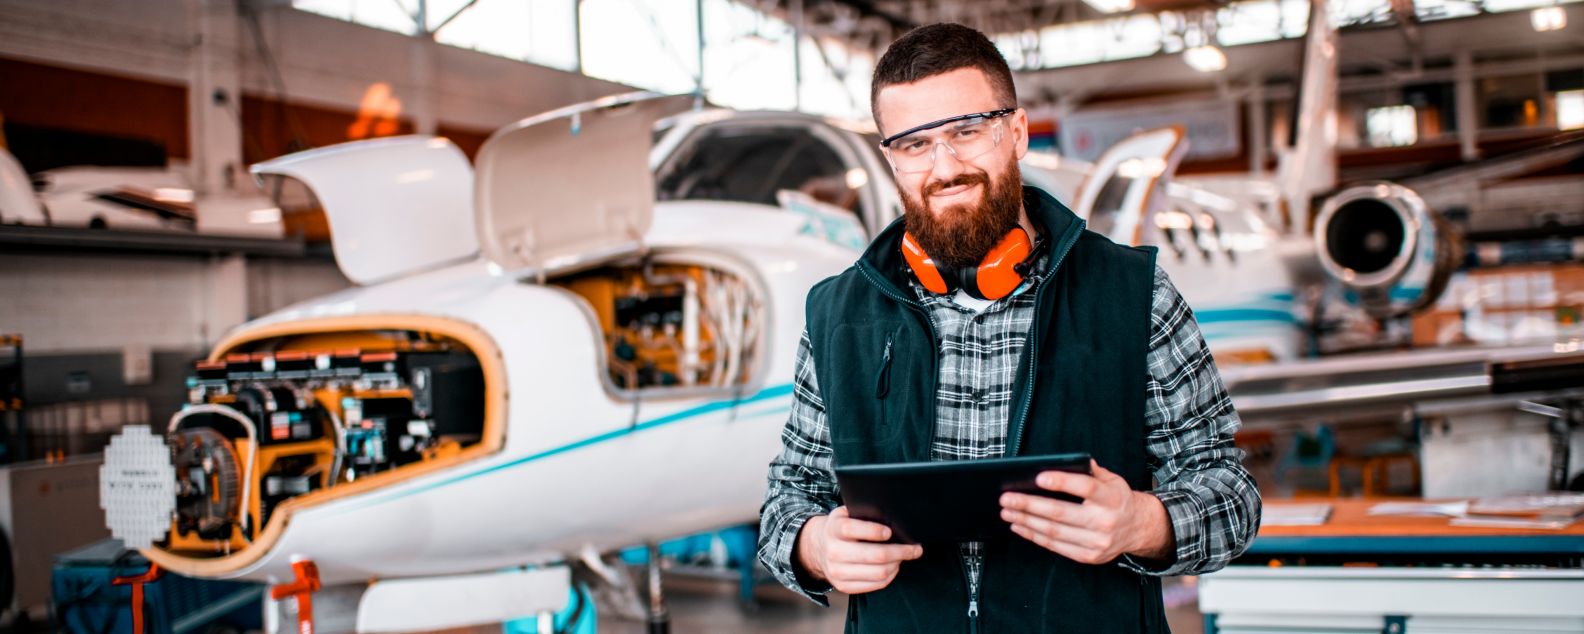 Ingeniero aeronáutico sonriendo y mirando a una cámara mientras sostiene una tableta digital y repara y da mantenimiento a un avión